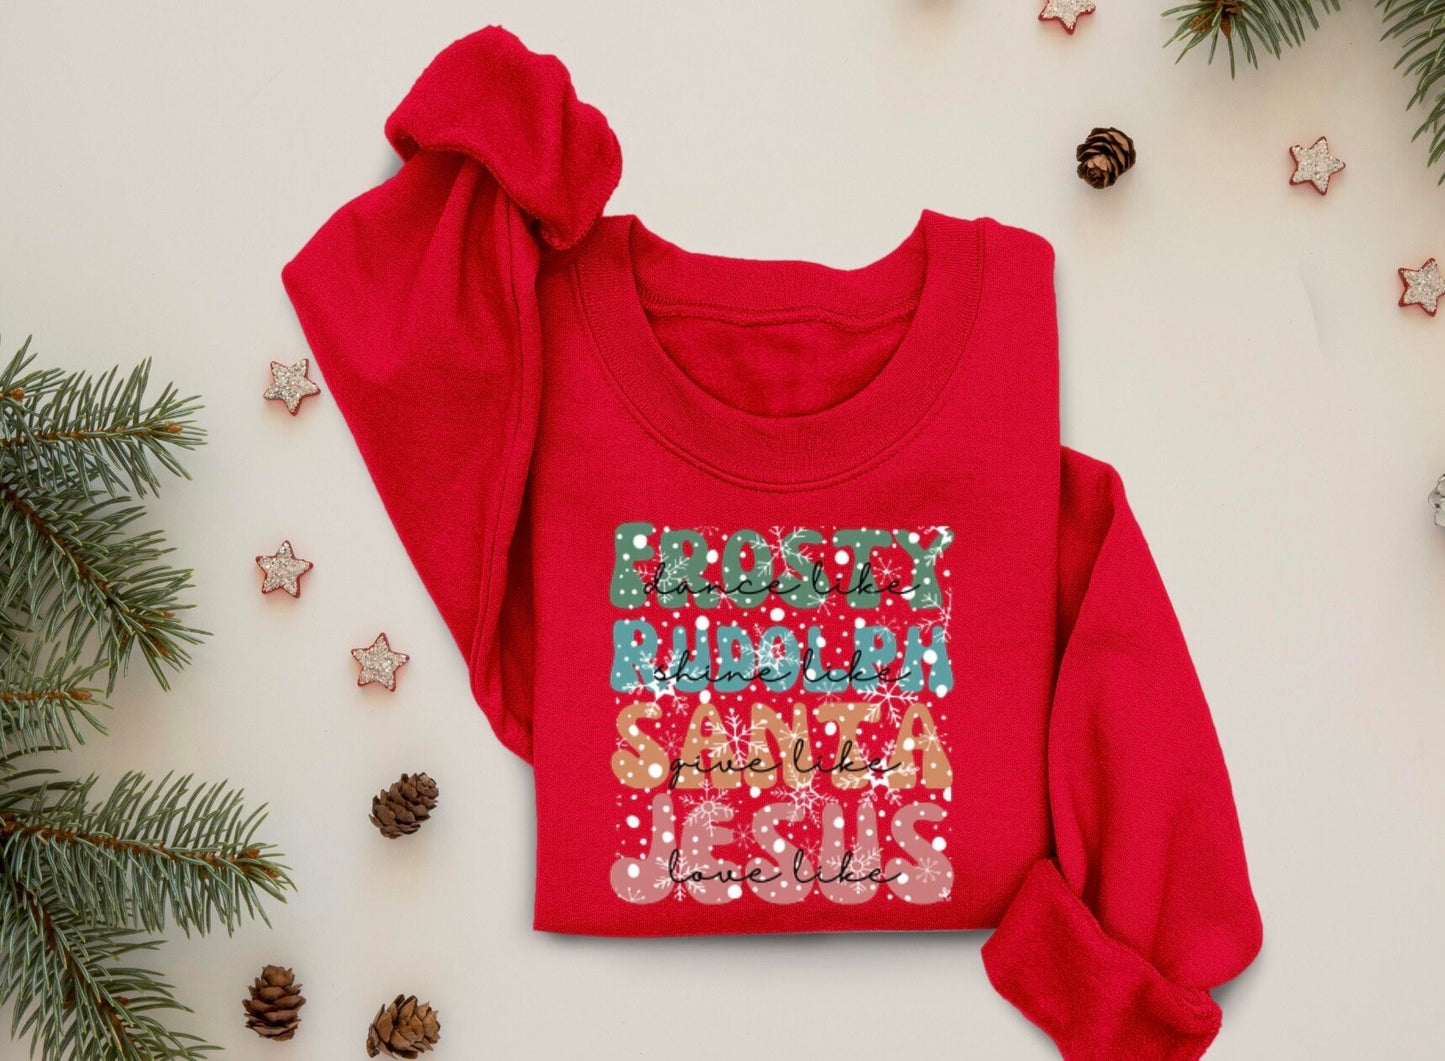 Dance Like Frosty Shine like Rudolph Give like Santa Love Like Jesus Shirt, Cute Christmas Sweatshirt, Christmas Shirt, Holiday Xmas Tee